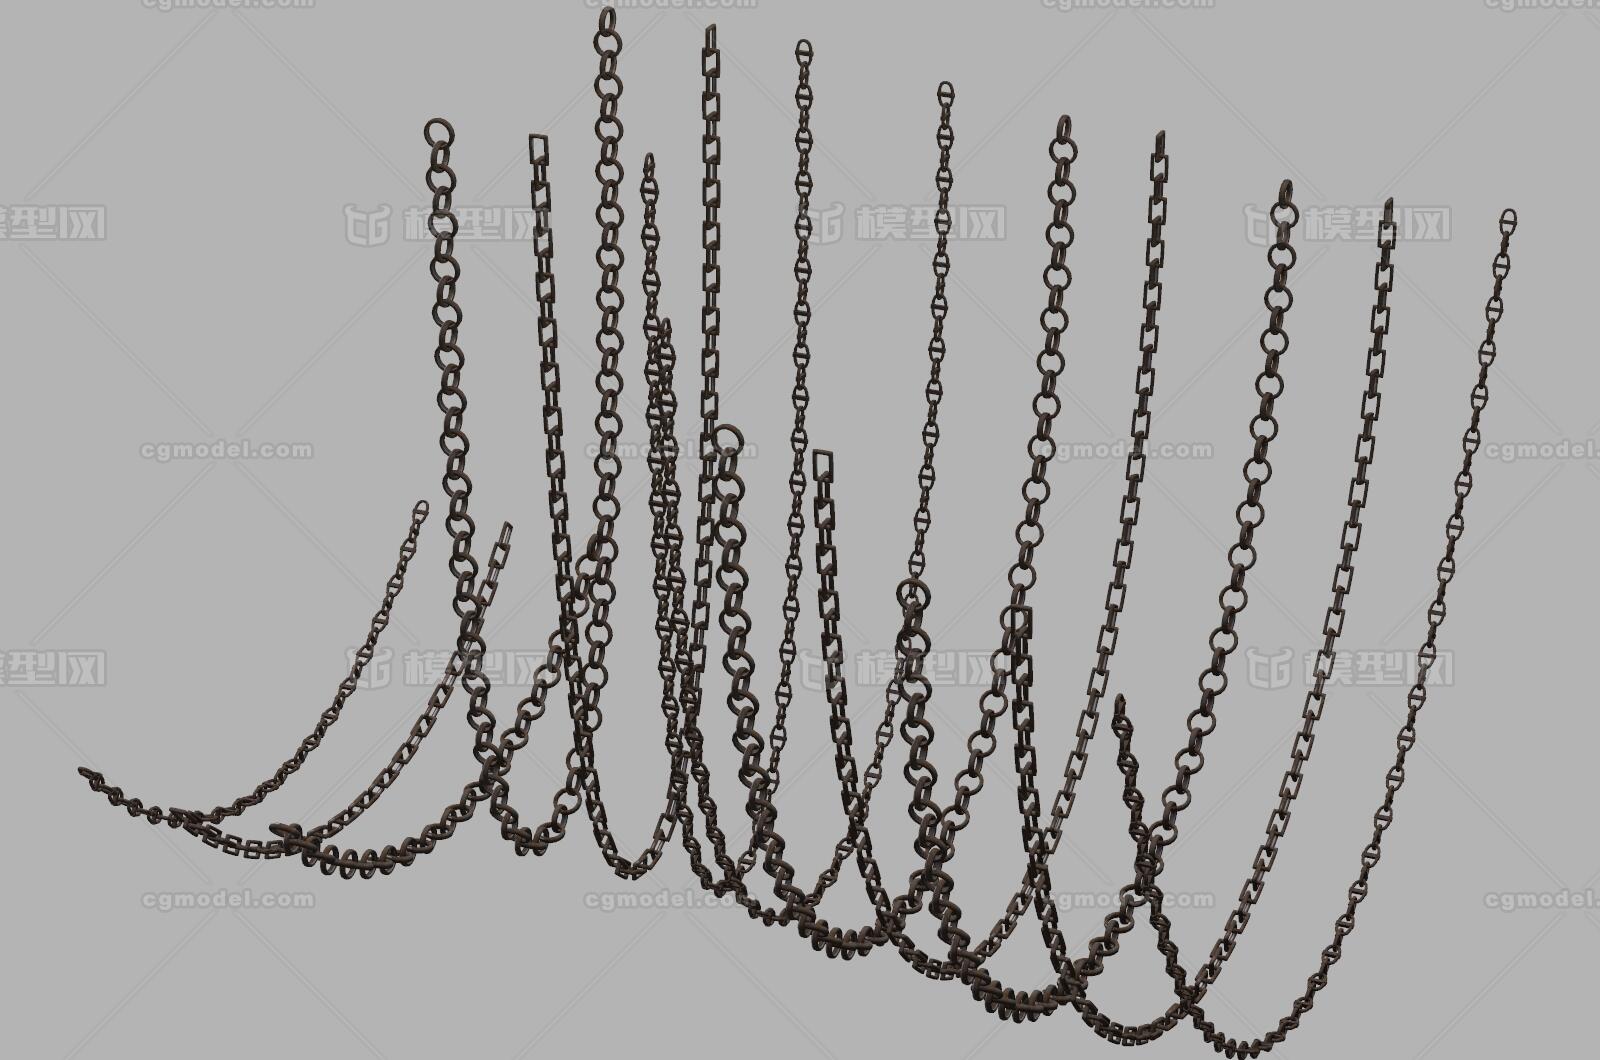 铁链模型包 铁链 铁索 锁链 链条 铁环 链锁 锁扣 铁鞭 串铁环 锁 链